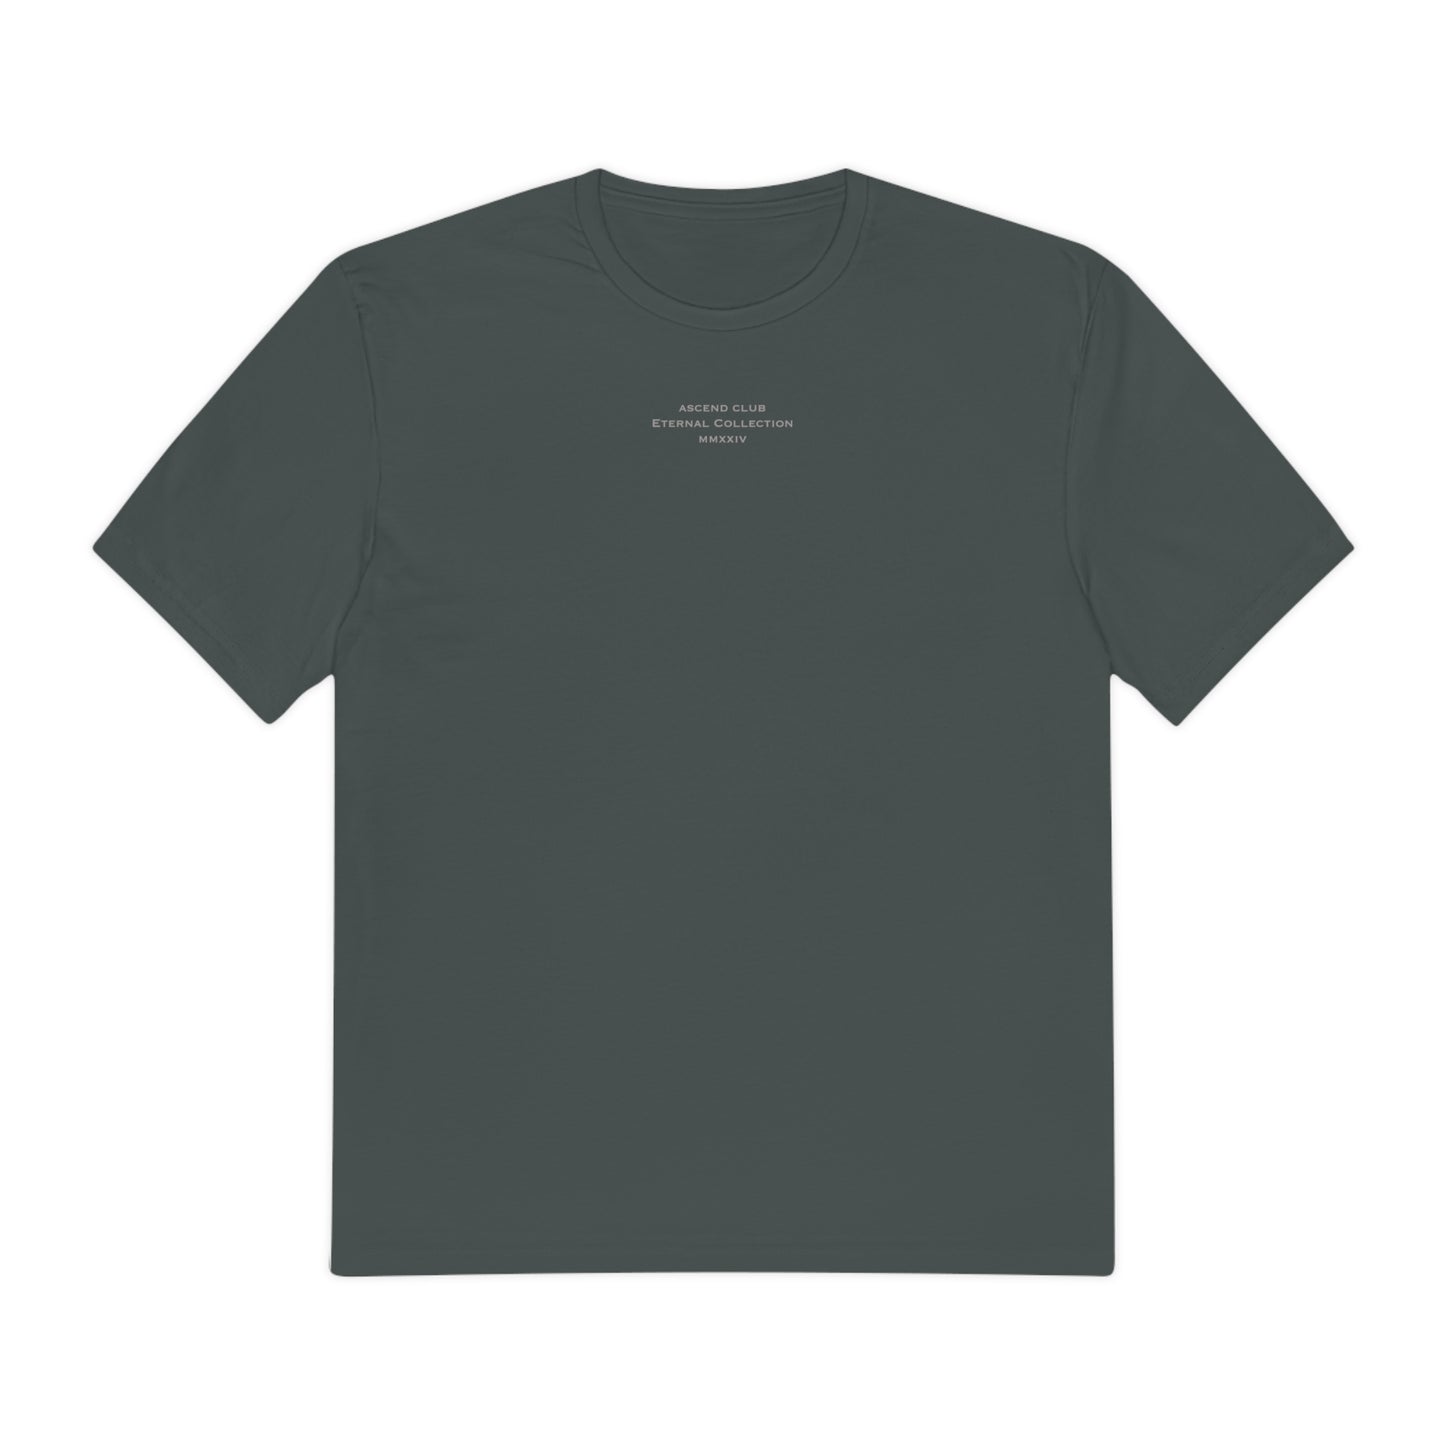 Eternal Collection T-Shirt